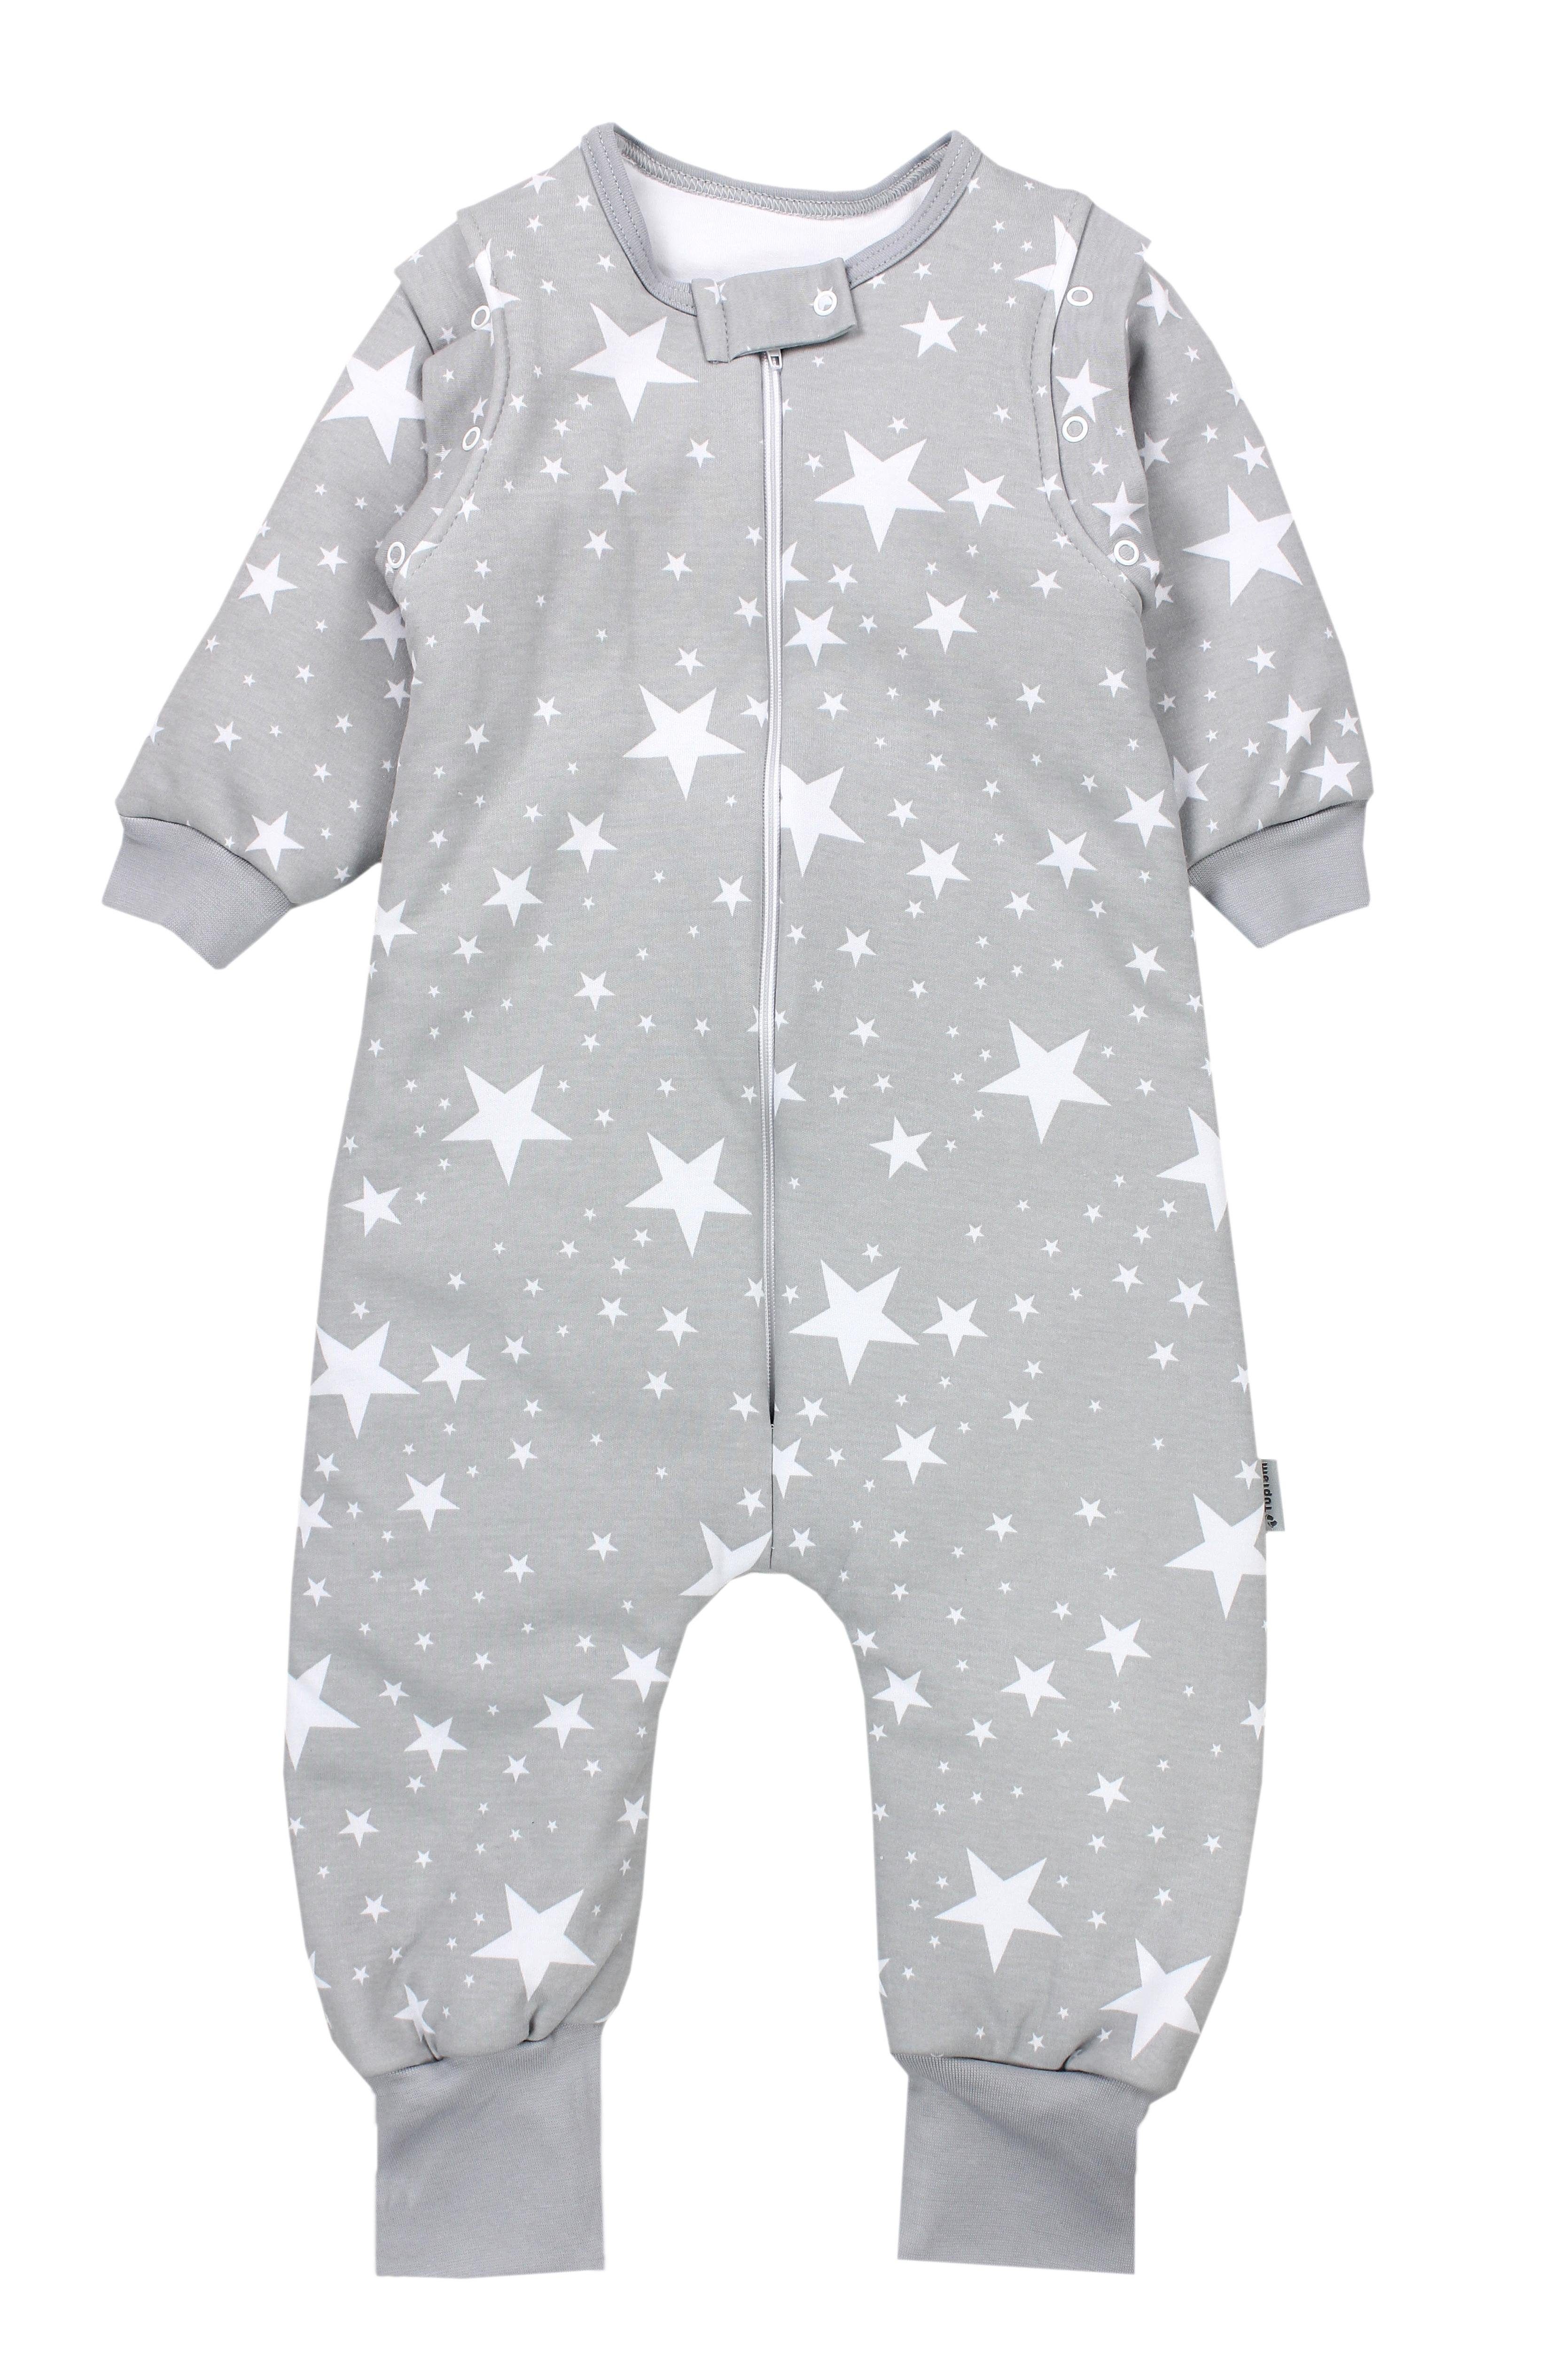 TupTam Babyschlafsack mit Beinen und Ärmel Winter OEKO-TEX zertifiziert Unisex Weiße Sterne / Grau